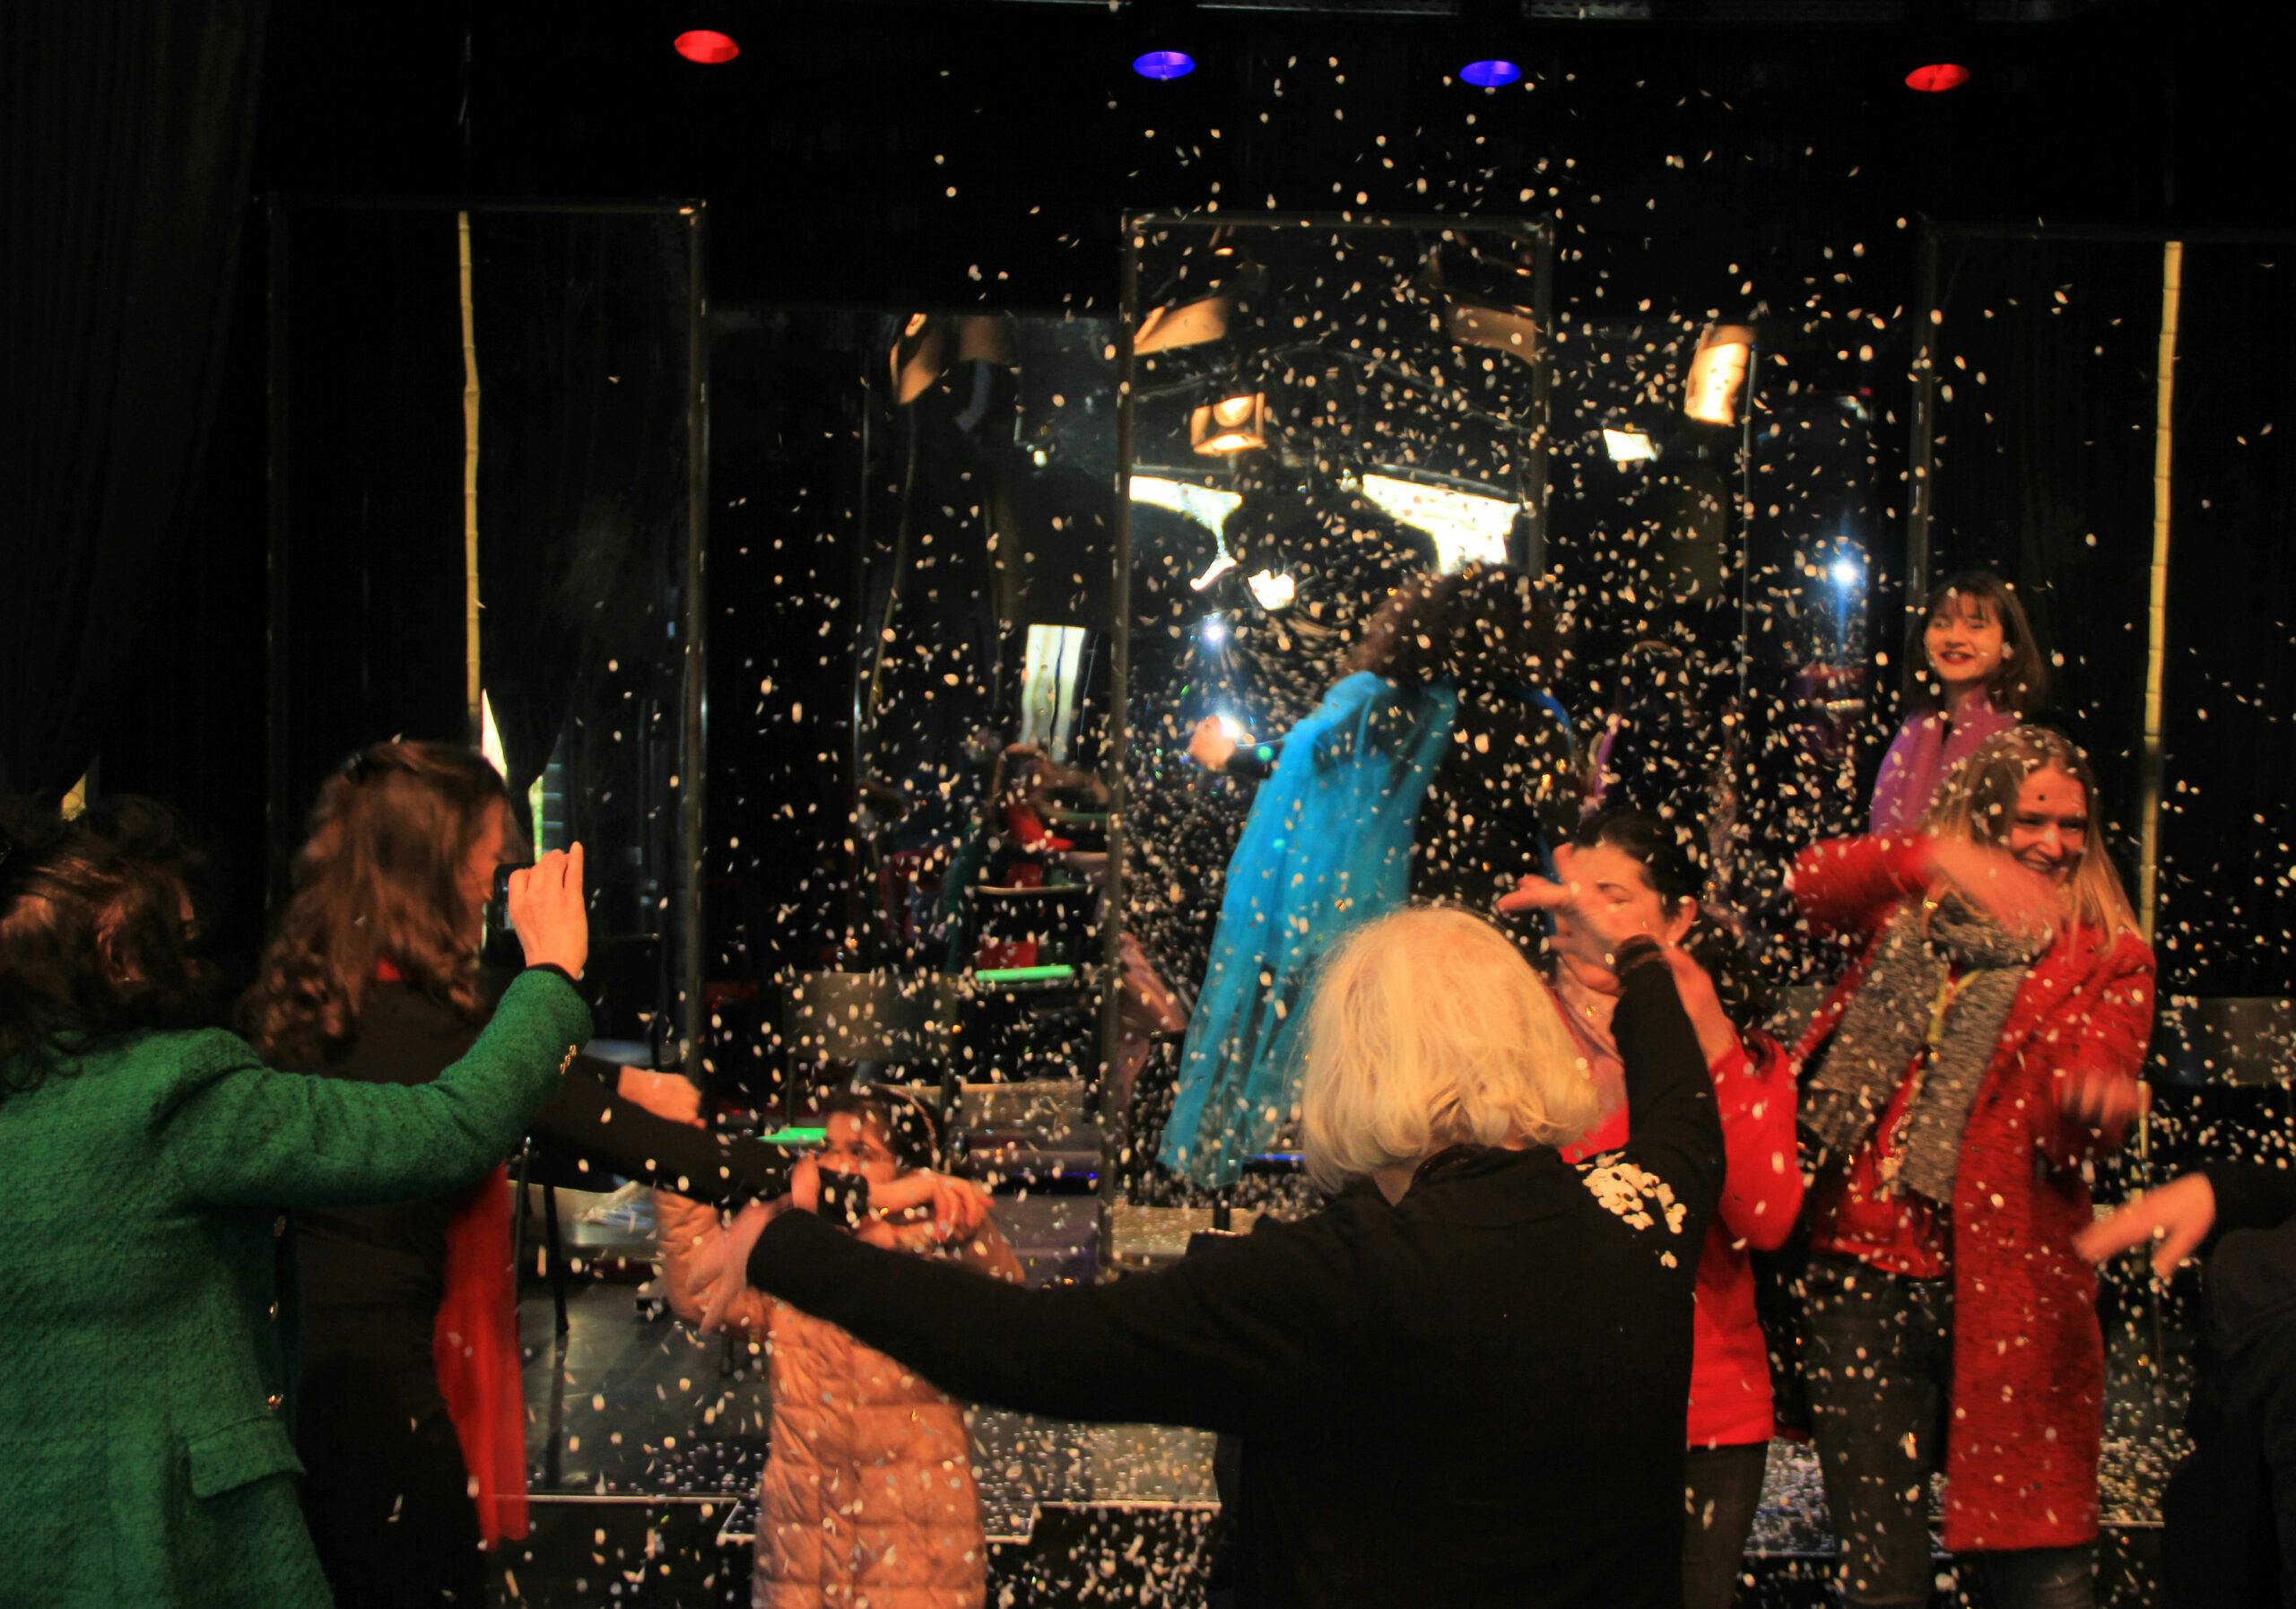 تصویری از رقص بازیگران هلندی گاتان بوچز، سارا لیمانز، اسمه پیترز، لیکه میرز و ویلمینه لیمبورخ با تعدادی از حضار